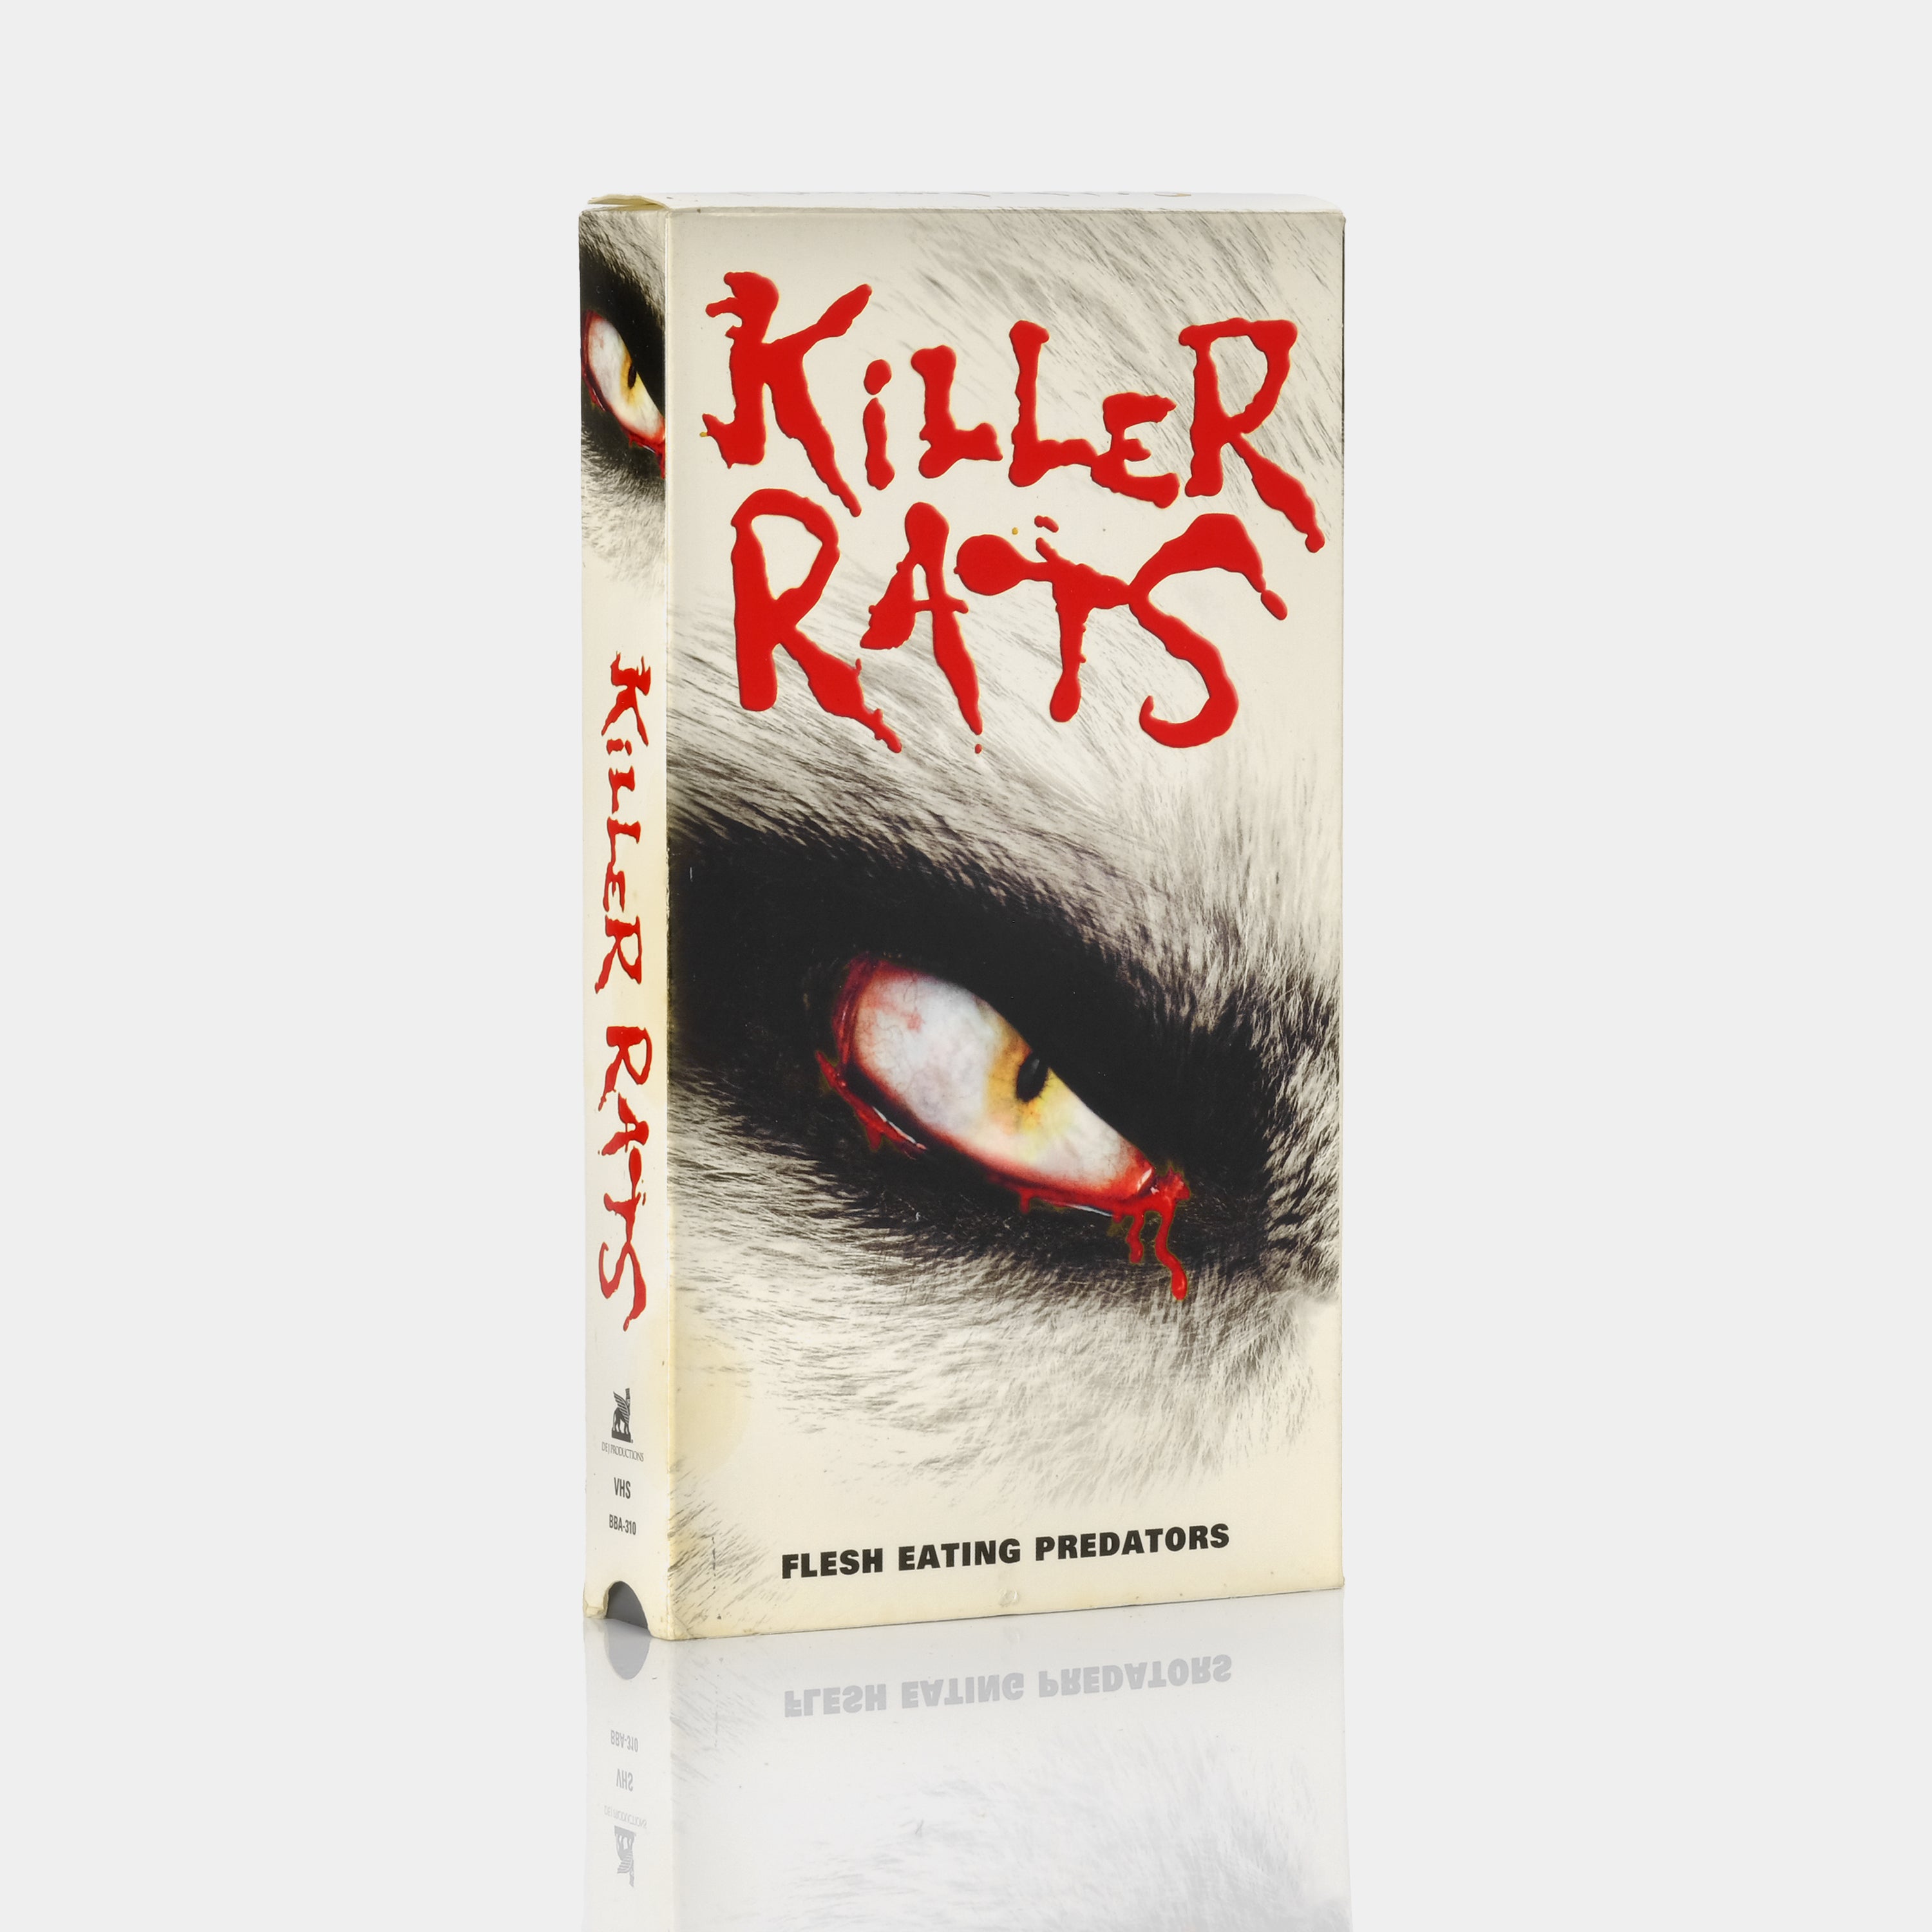 Killer Rats VHS Tape